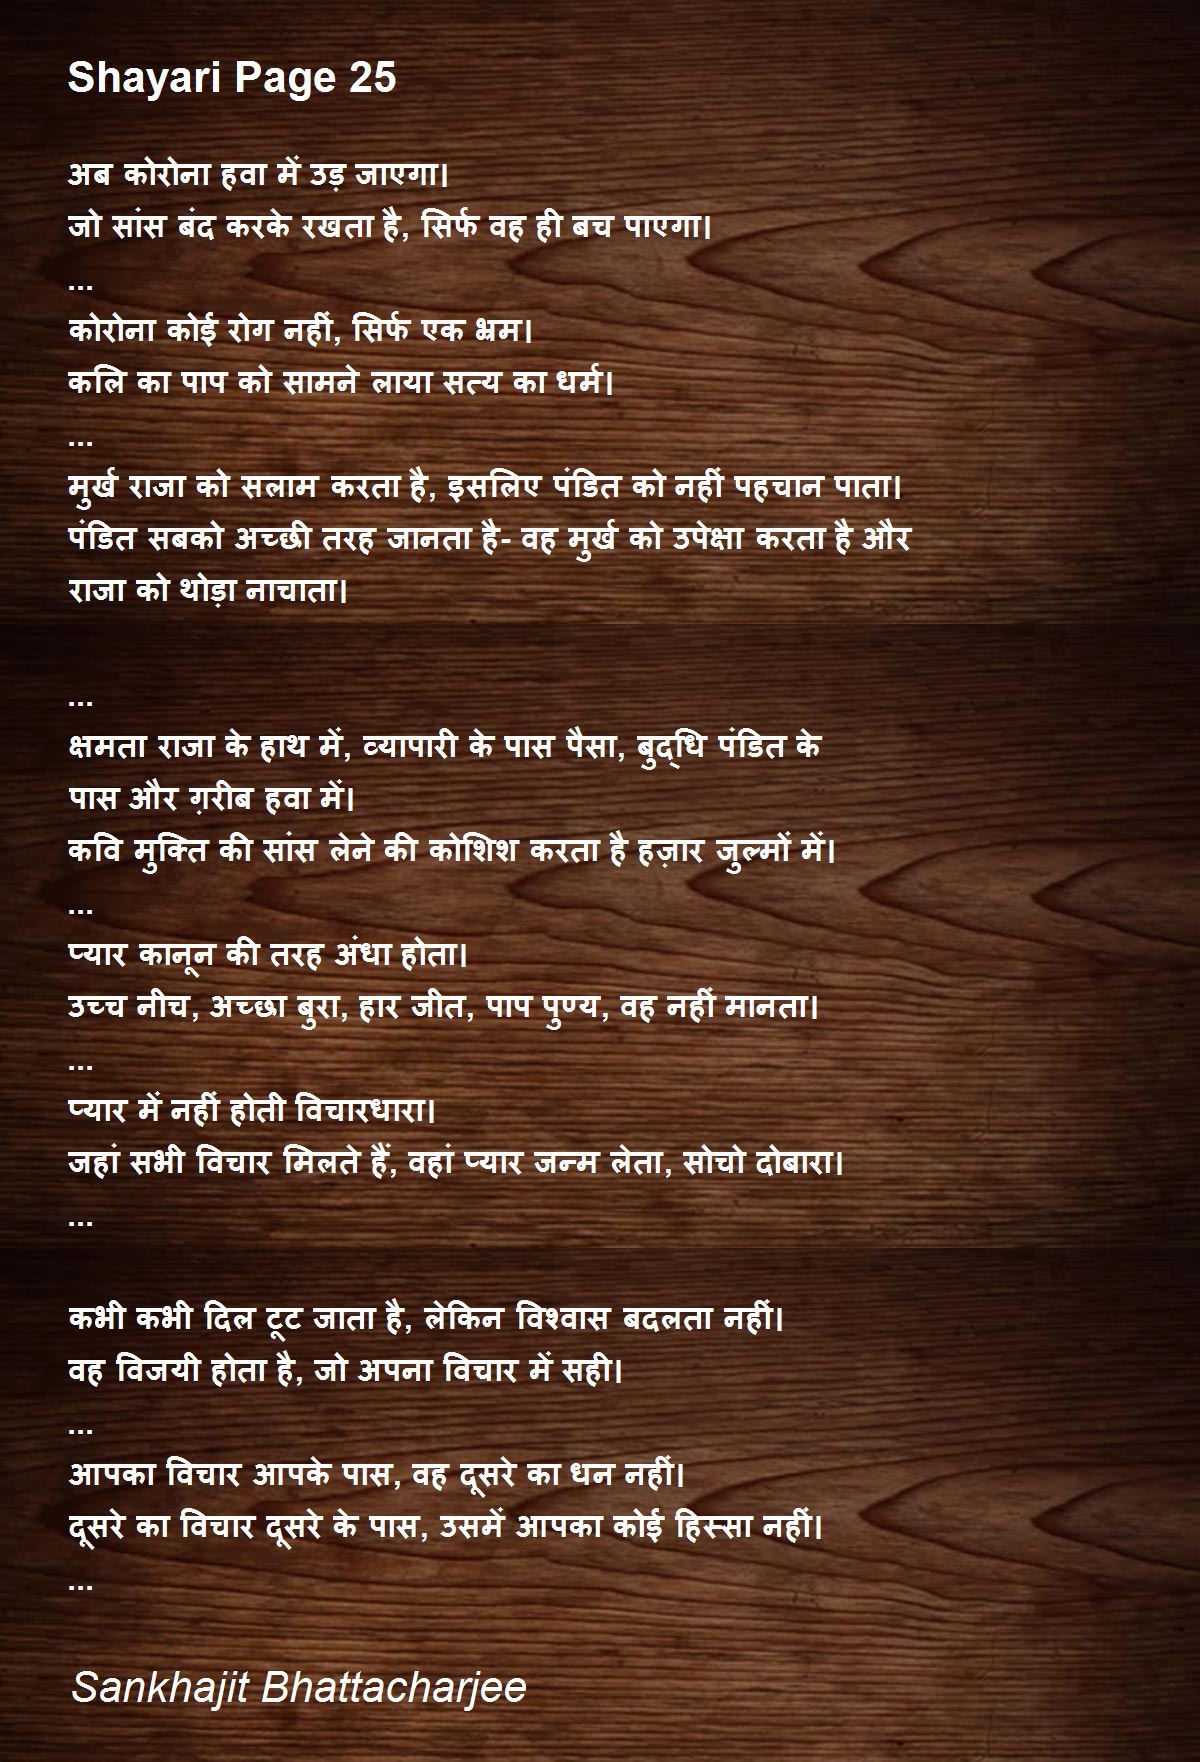 Vidur Niti: जीवन में कैसा व्यवहार व्यक्ति को खाई में गिरने से बचाता है,  यहां जानिए - Vidur Niti from Mahatma Vidur Neeti in Hindi know What  behavior in life saves a